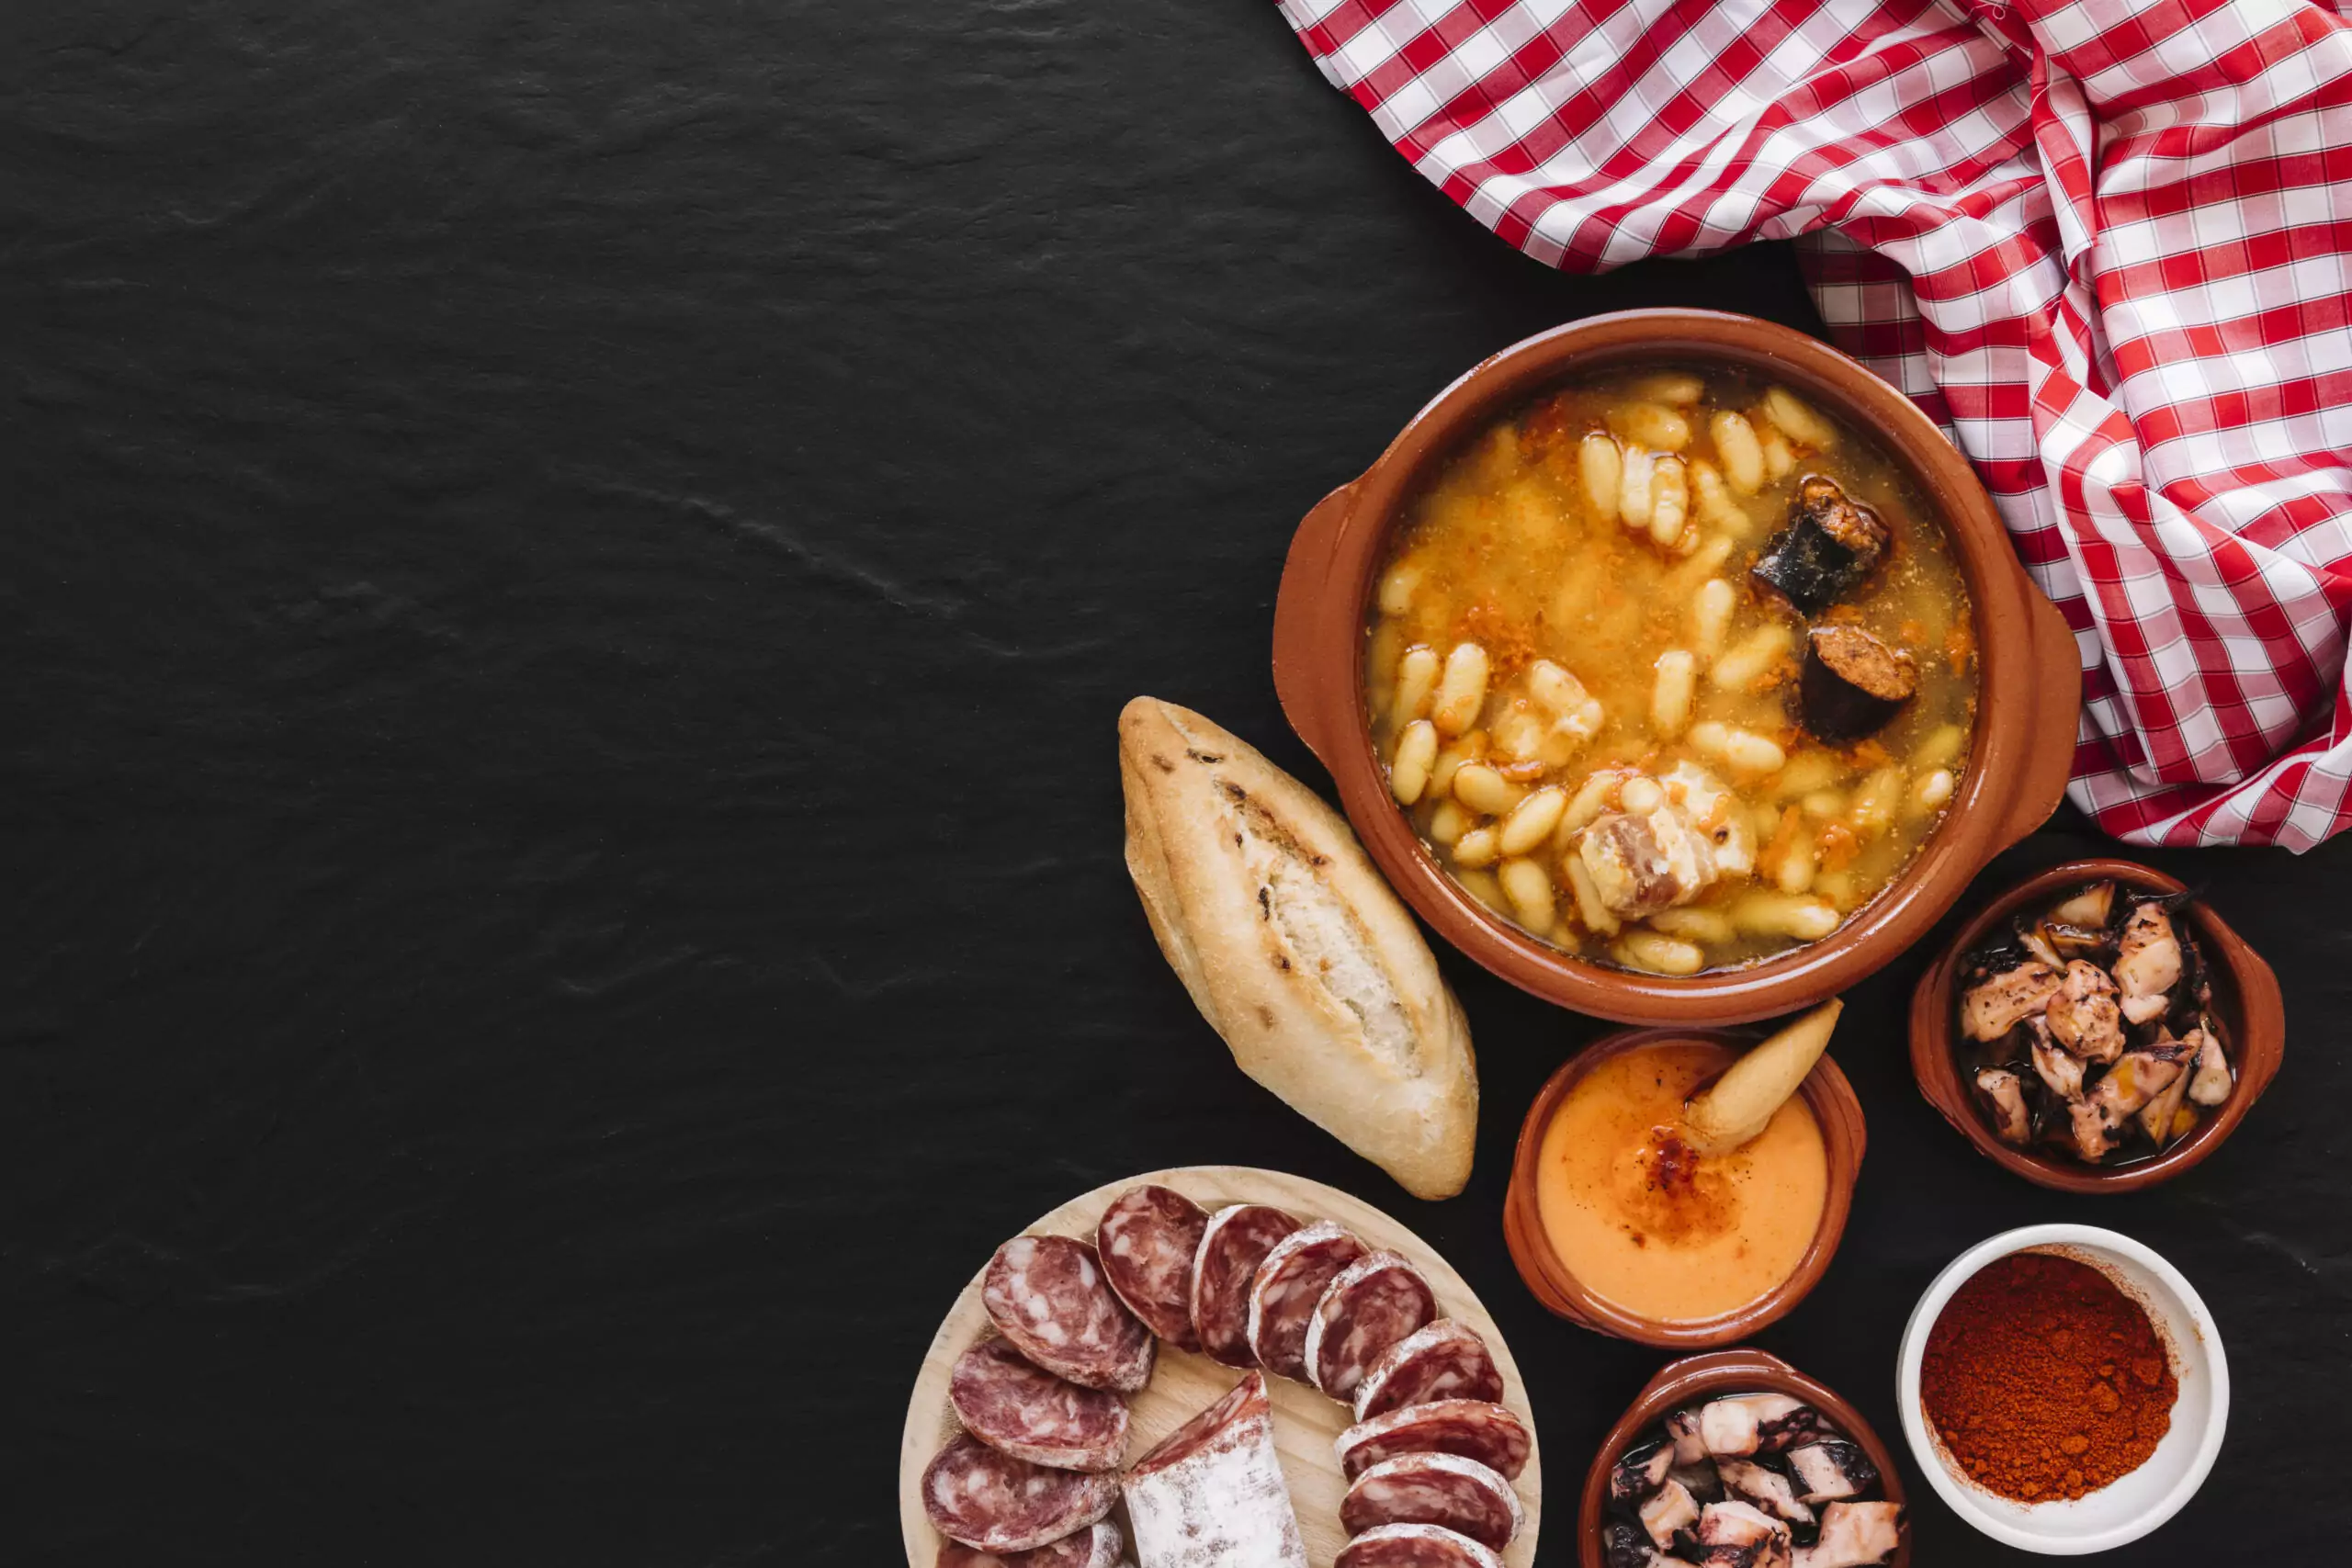 Descubre la exquisita gastronomía de Asturias